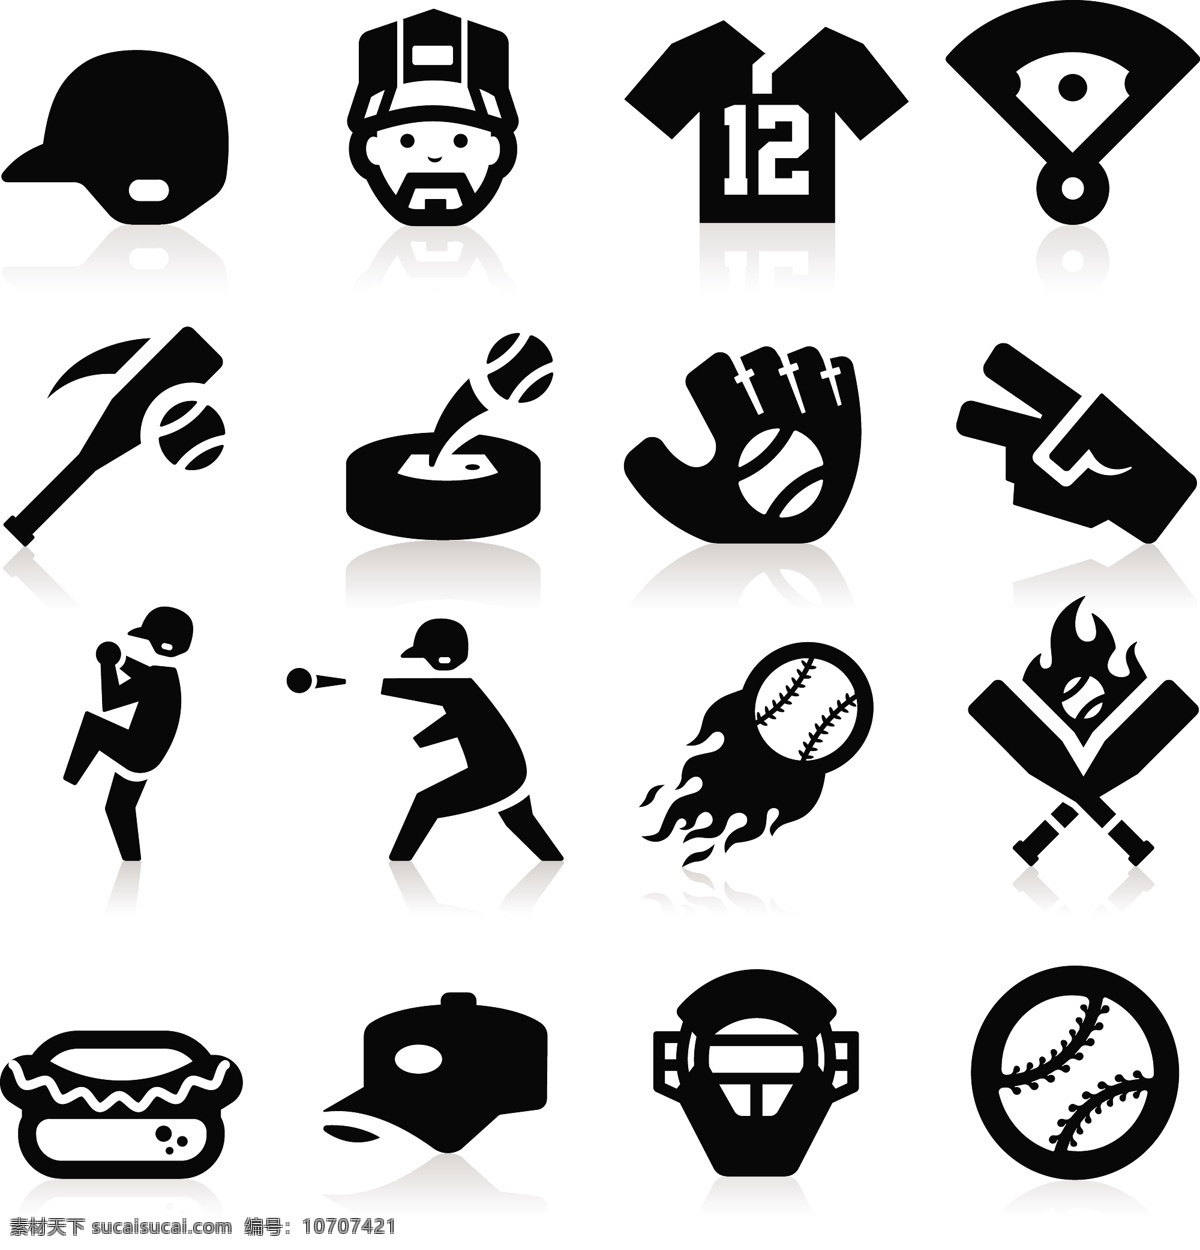 棒球 棒球帽 手绘 体育运动 文化艺术 运动 棒球矢量素材 棒球模板下载 棒球装备 棒球场 球衣 运动装备 矢量 矢量图 日常生活